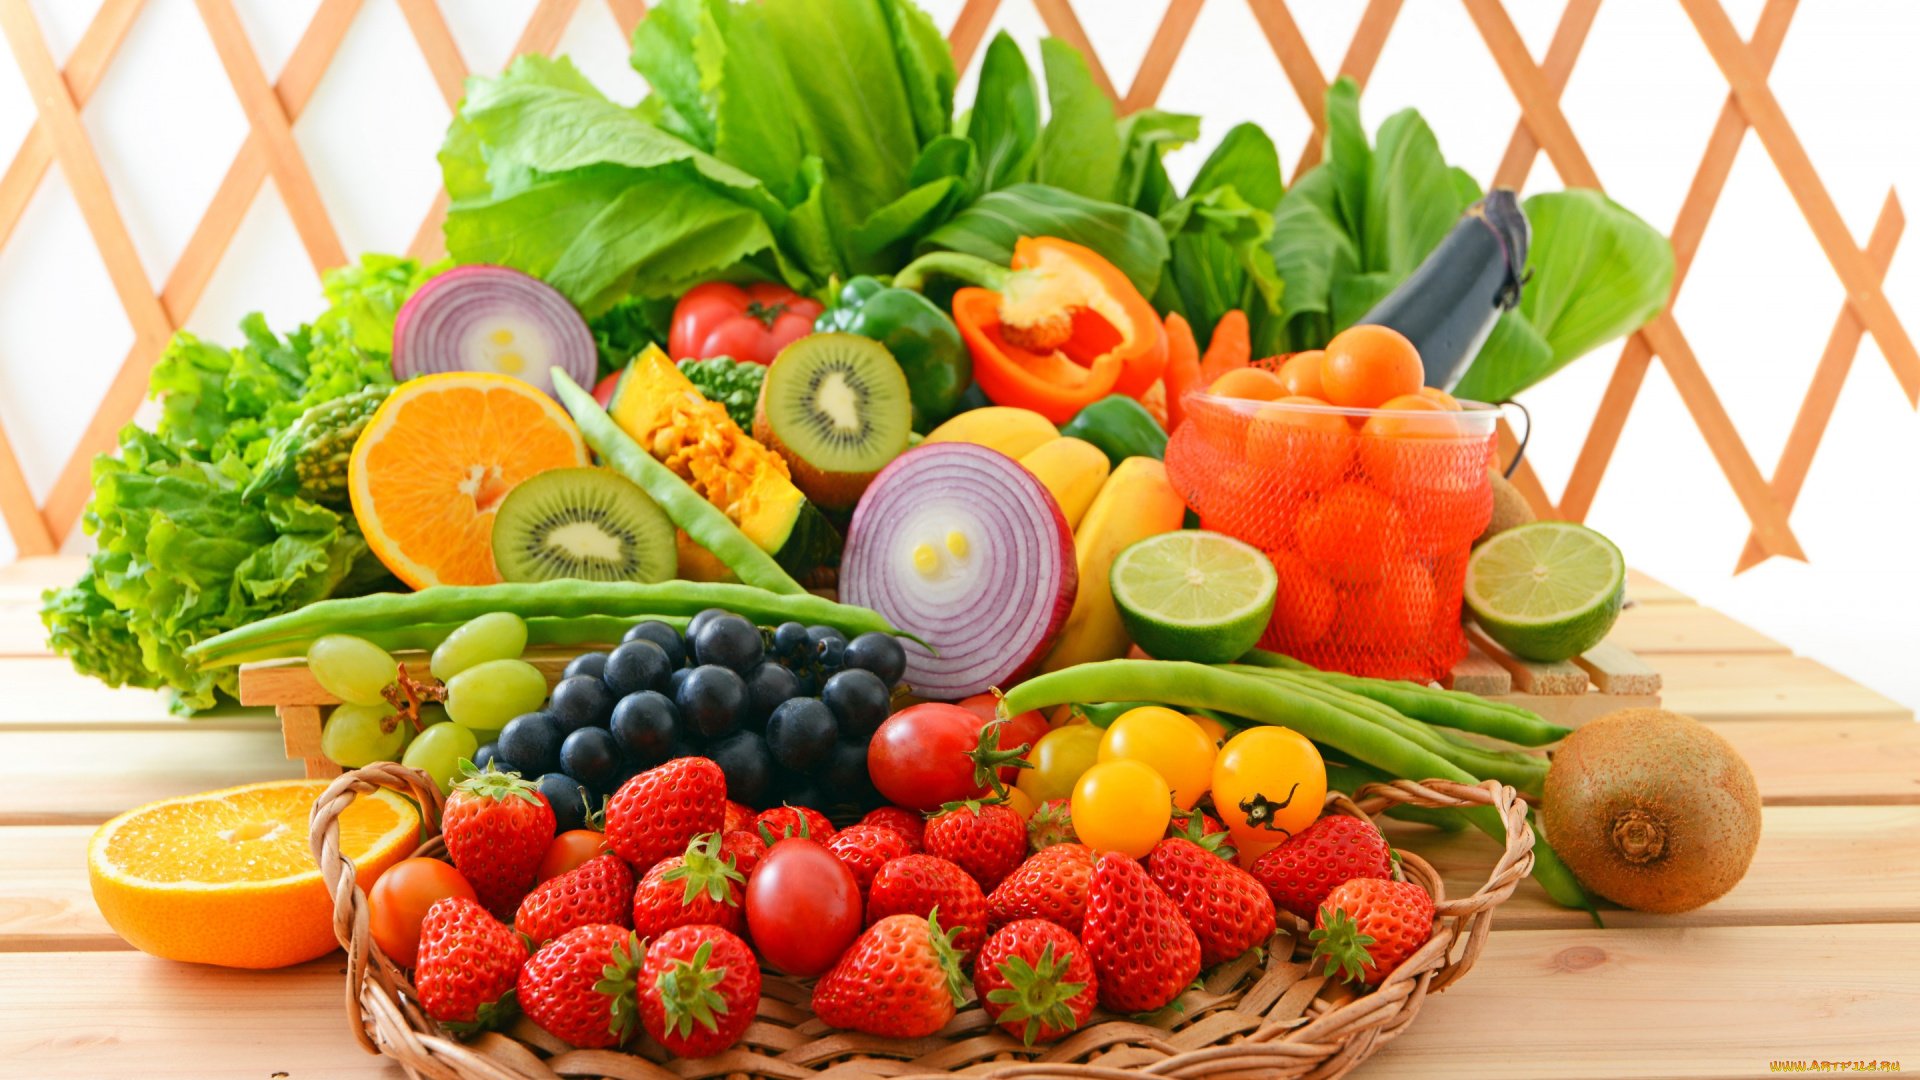 еда, фрукты, и, овощи, вместе, клубника, киви, салат, мандарины, корзинка, fruits, fresh, помидоры, ягоды, фрукты, овощи, vegetables, berries